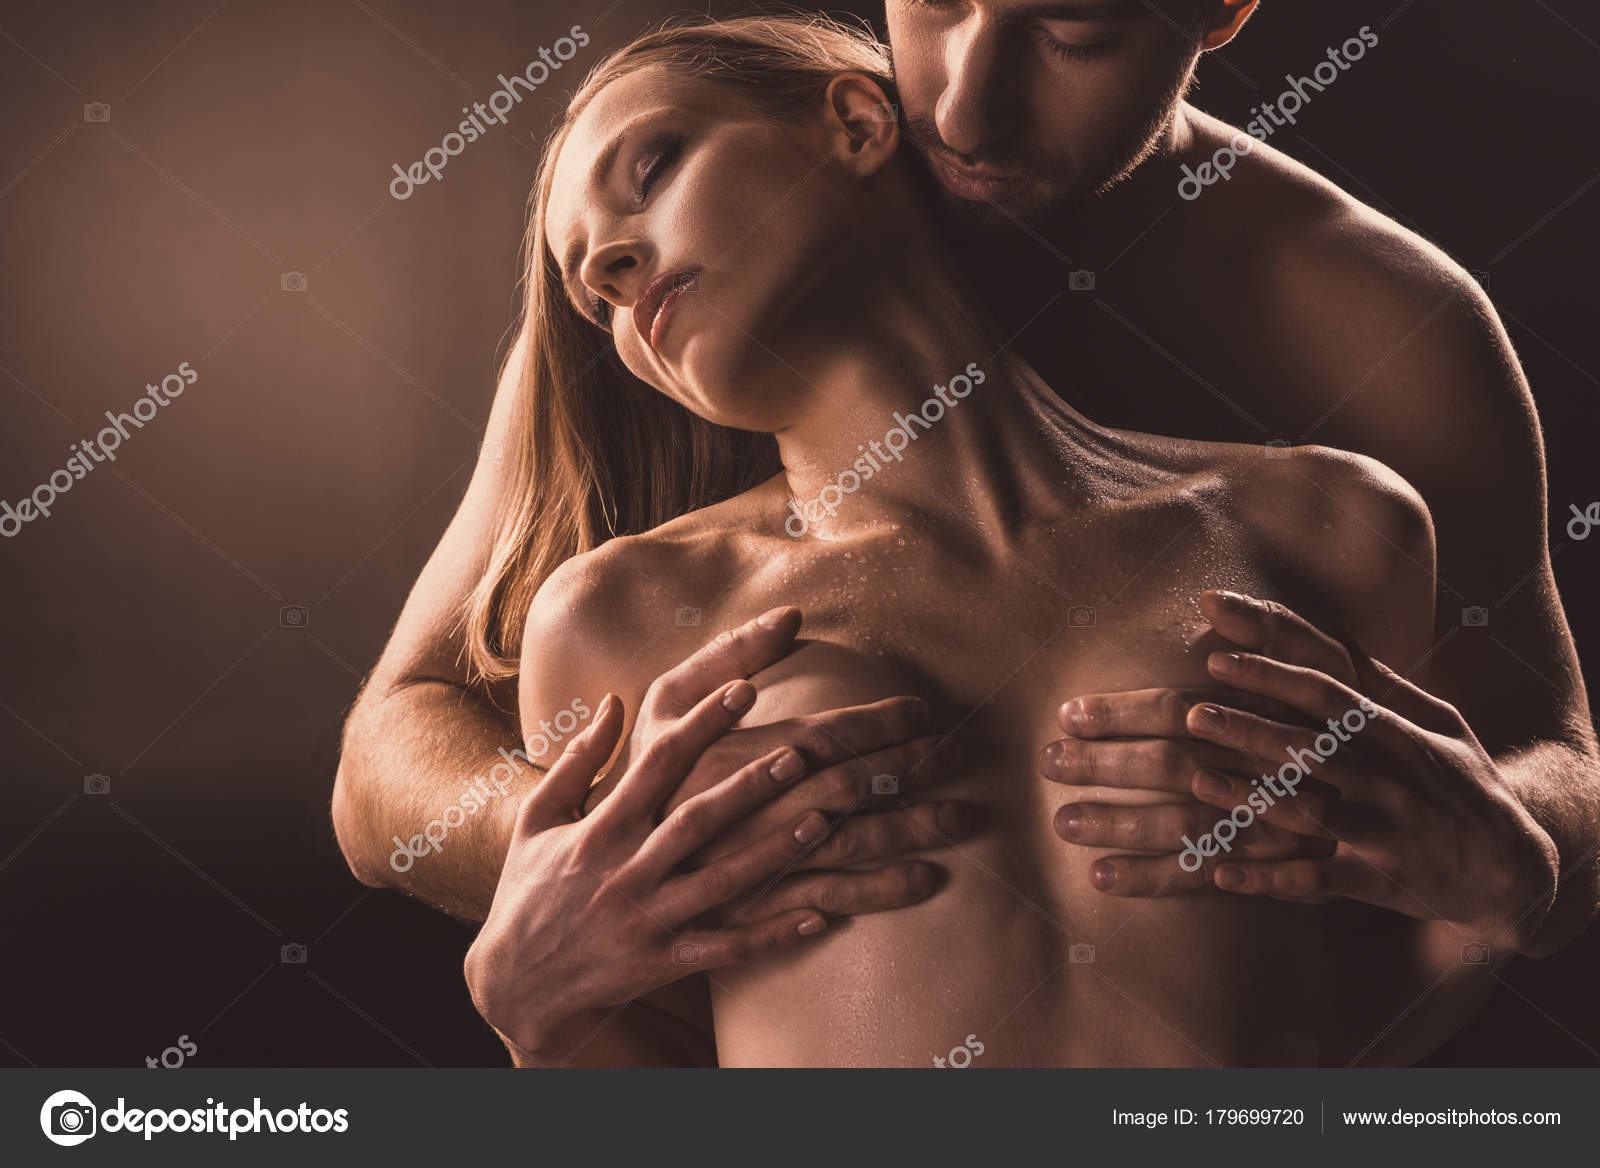 Boyfriend pressing girlfriend boobs